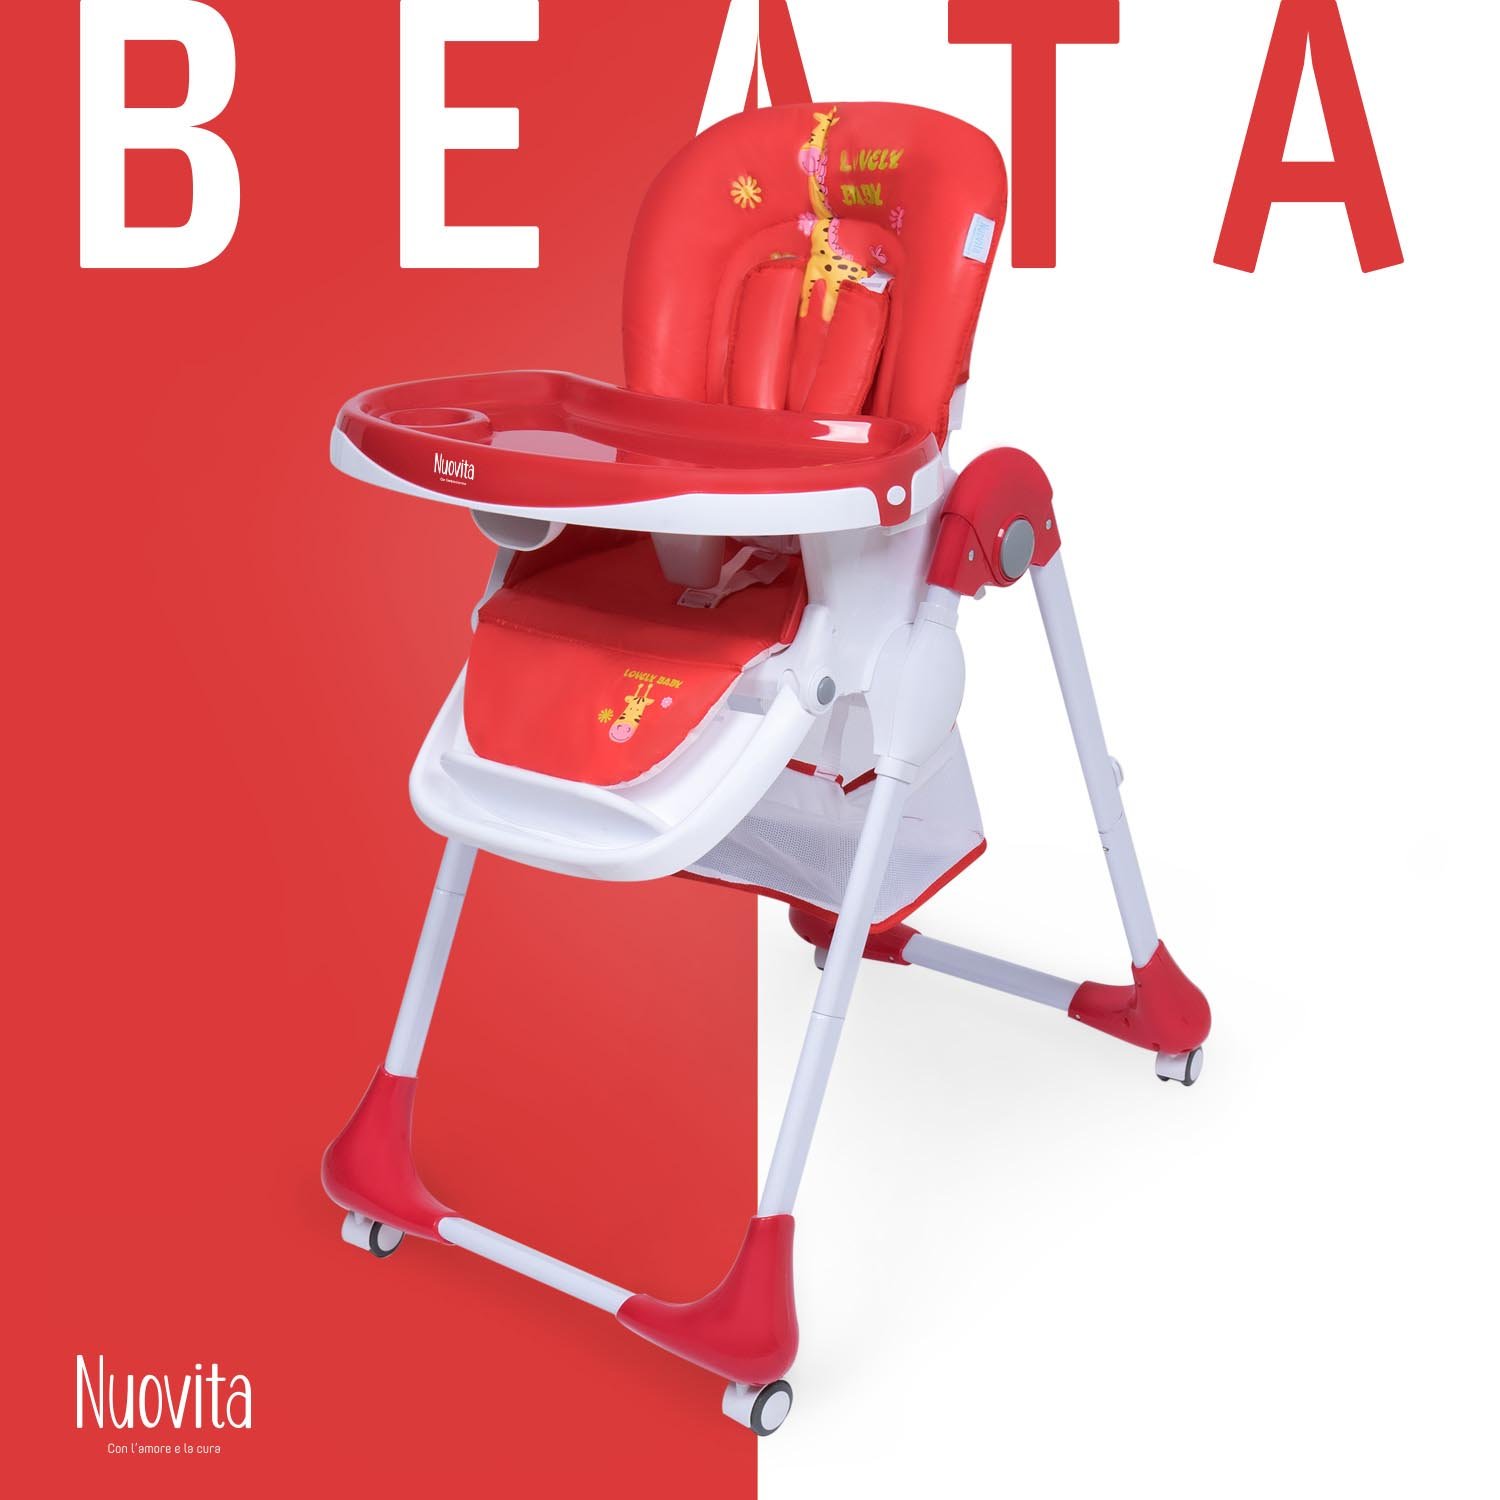 Стульчик для кормления Nuovita Beata ( Savana rosso) стульчик для кормления brevi b fun красный